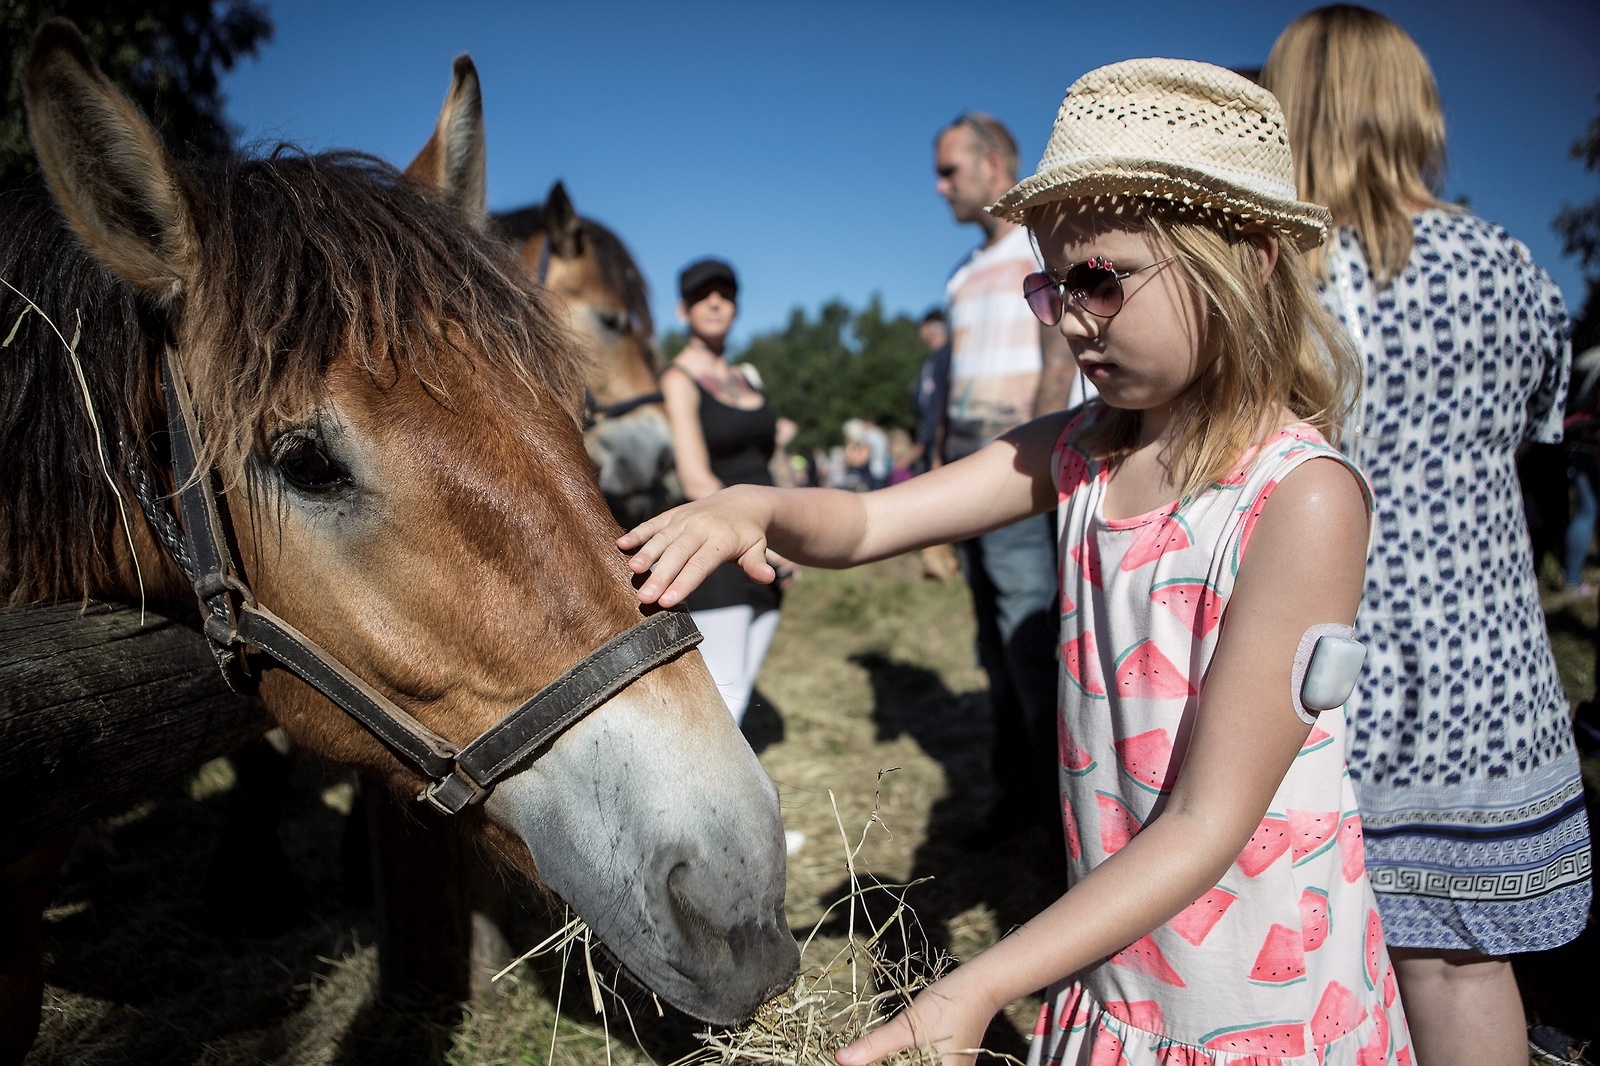 Mysigt med hästar och kanske lite läskigt, tycker Alva Wenzel, som är sju år och kommer från Råå. 
foto: jörgen johansson